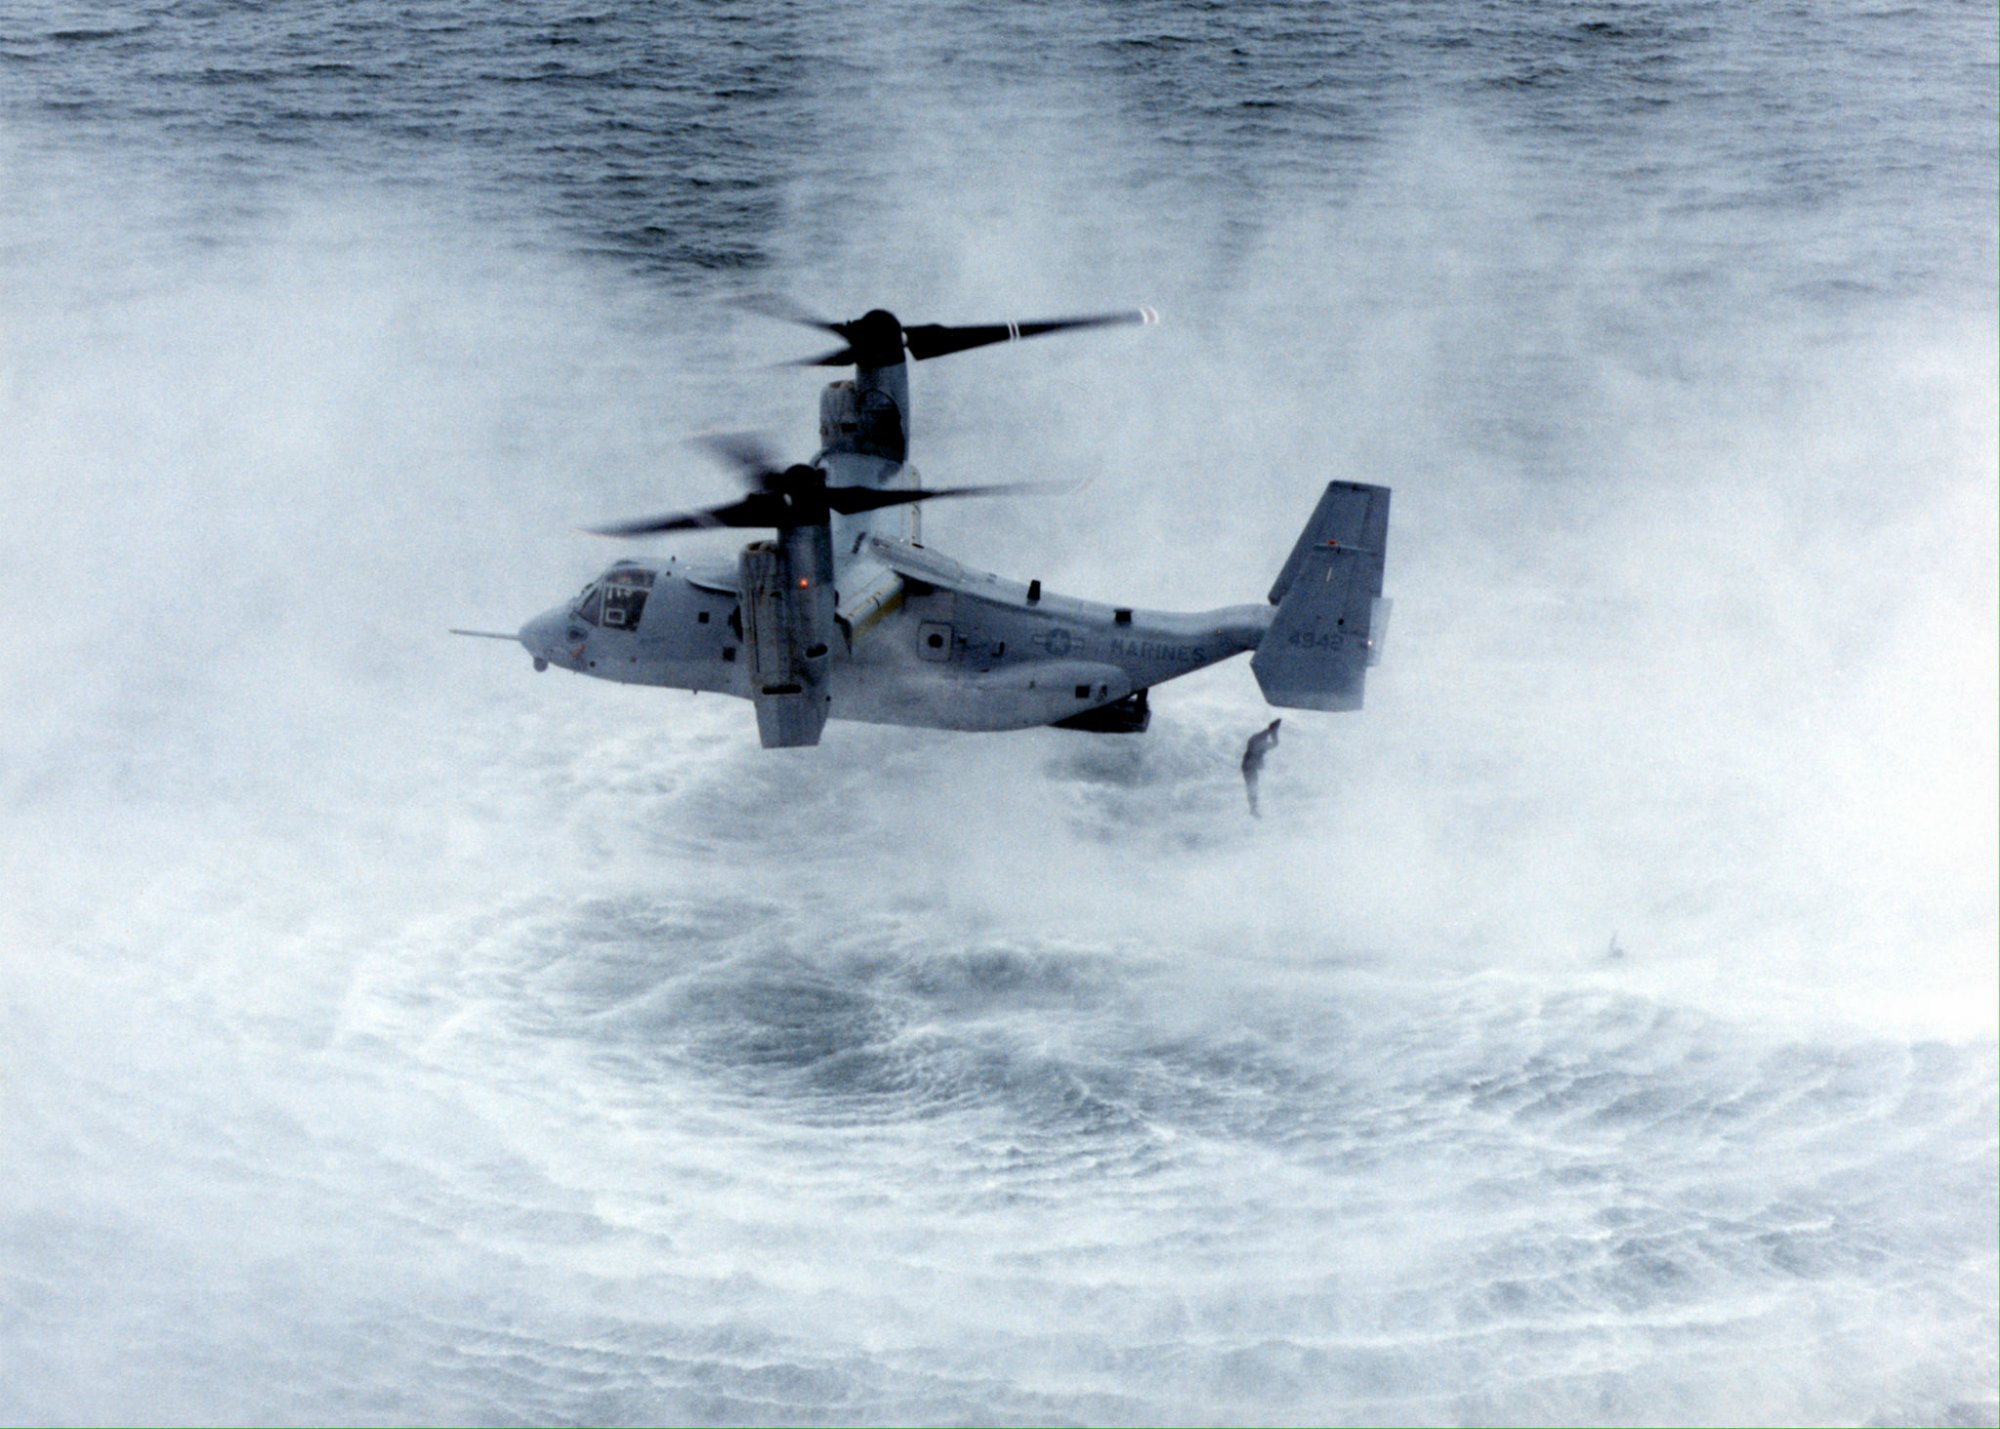 Βρέθηκε το μαύρο κουτί του αεροσκάφους Osprey των ΗΠΑ που είχε συντριβεί ανοικτά της Ιαπωνίας